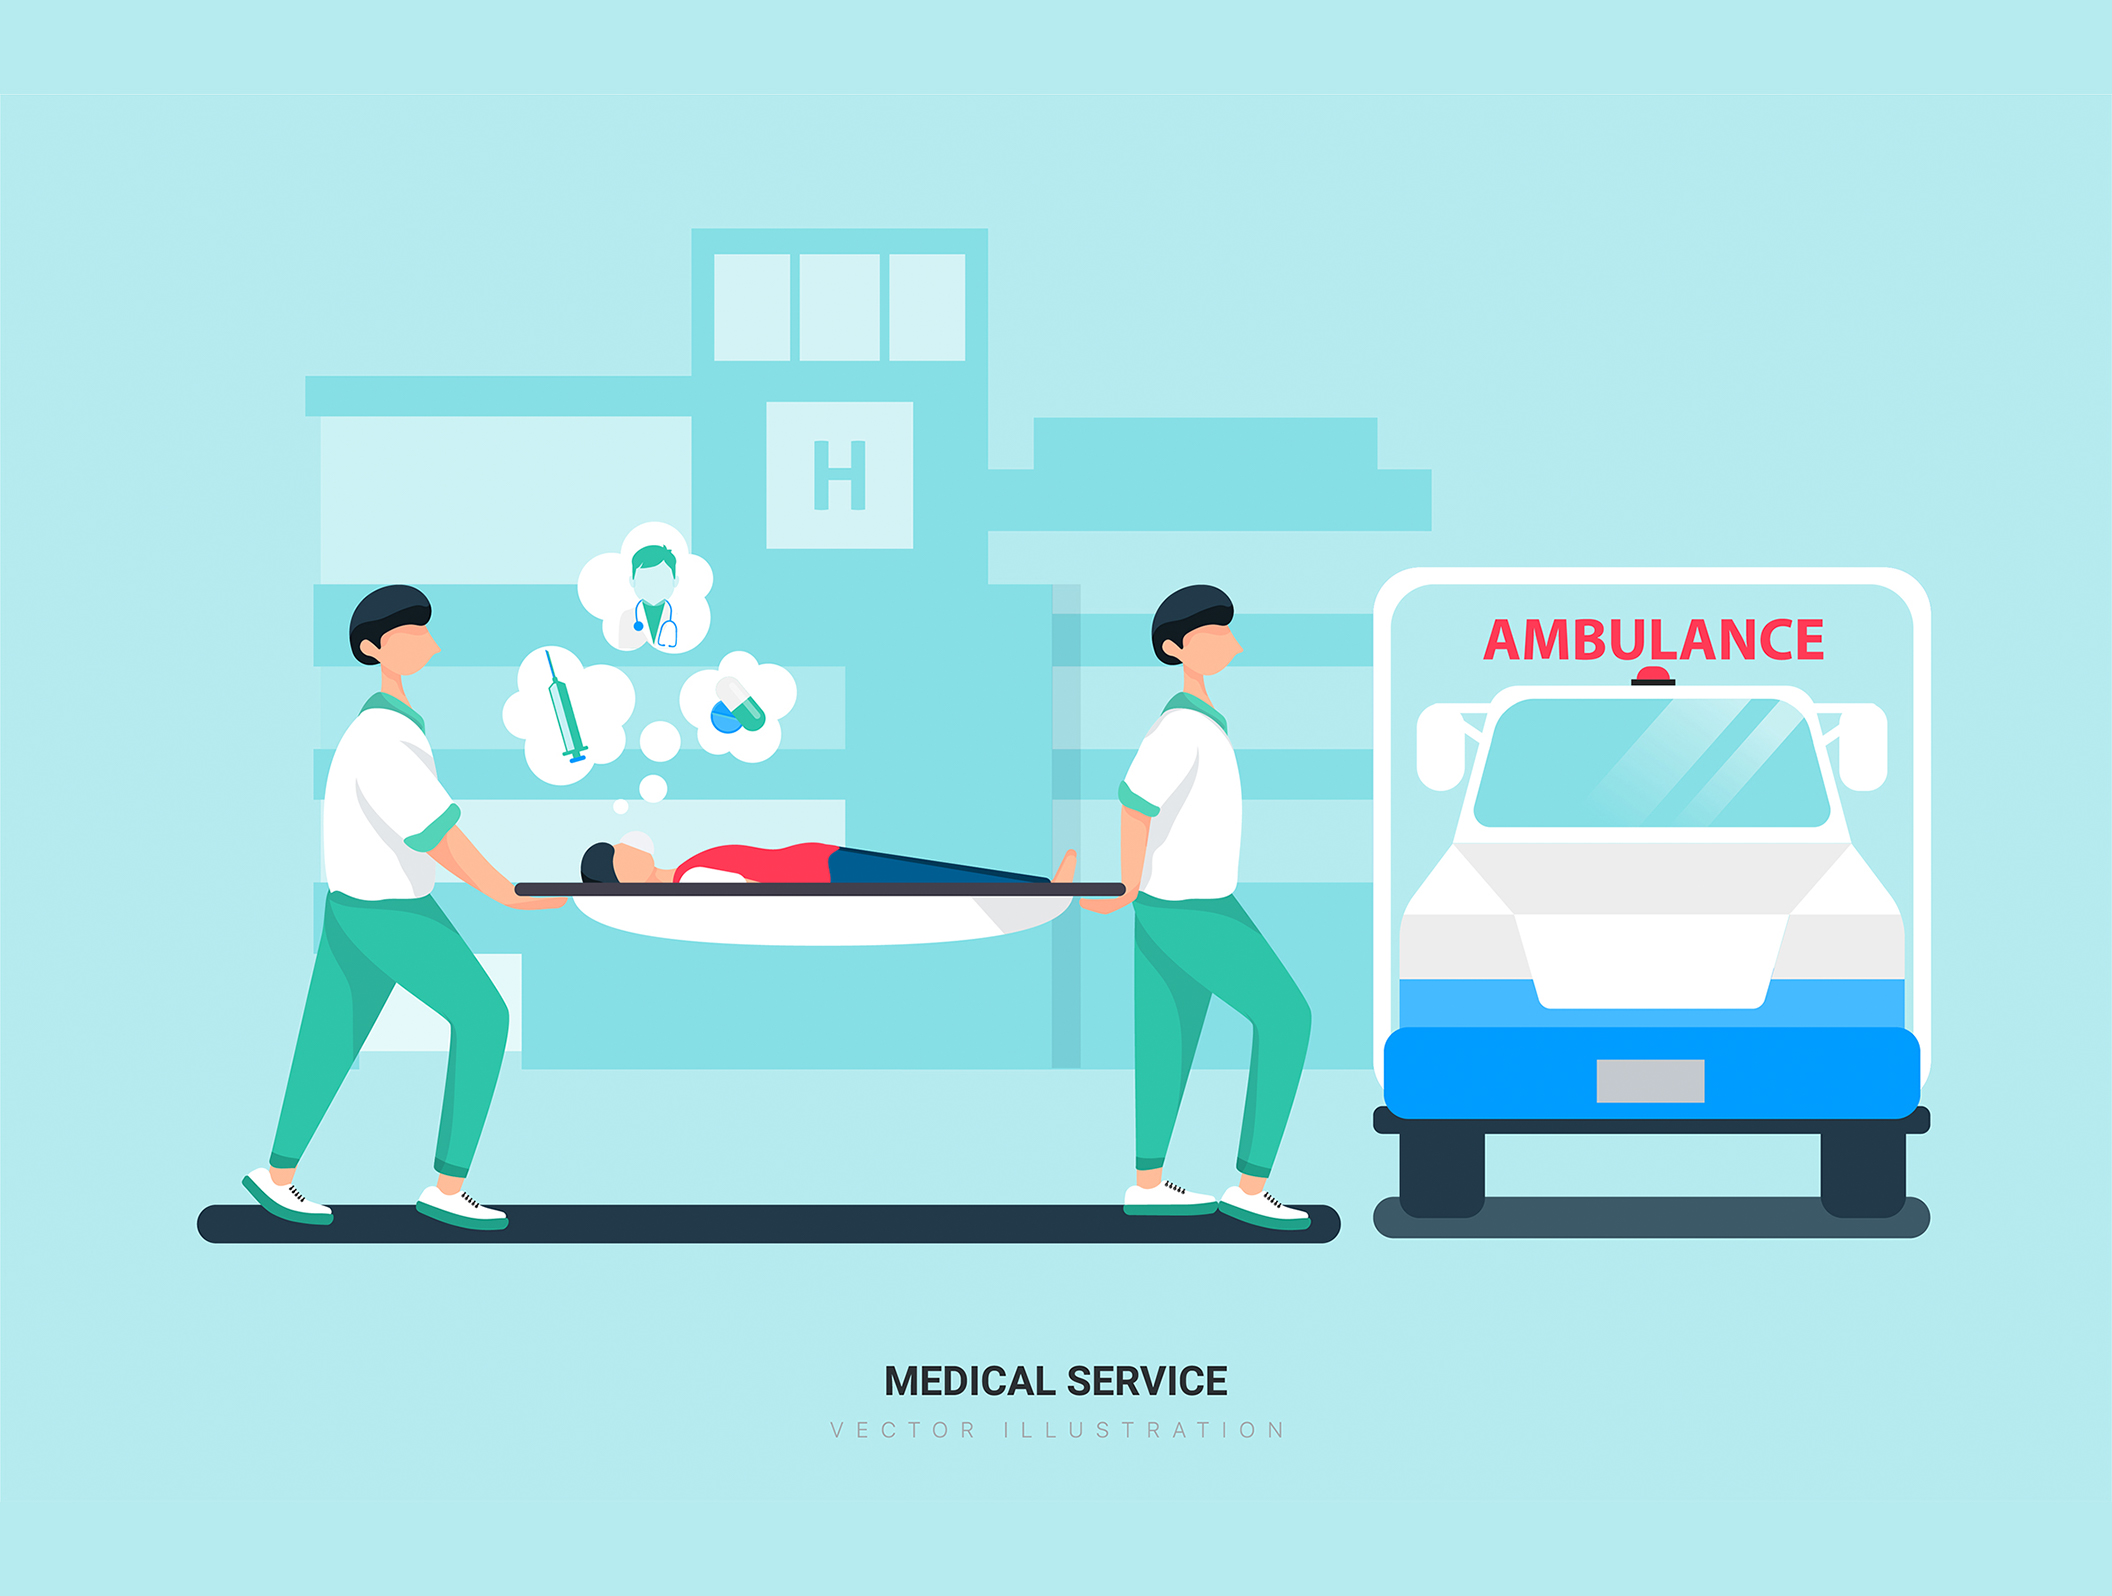 第一素材下午茶：医院和医疗保健场景矢量插画素材插图(3)